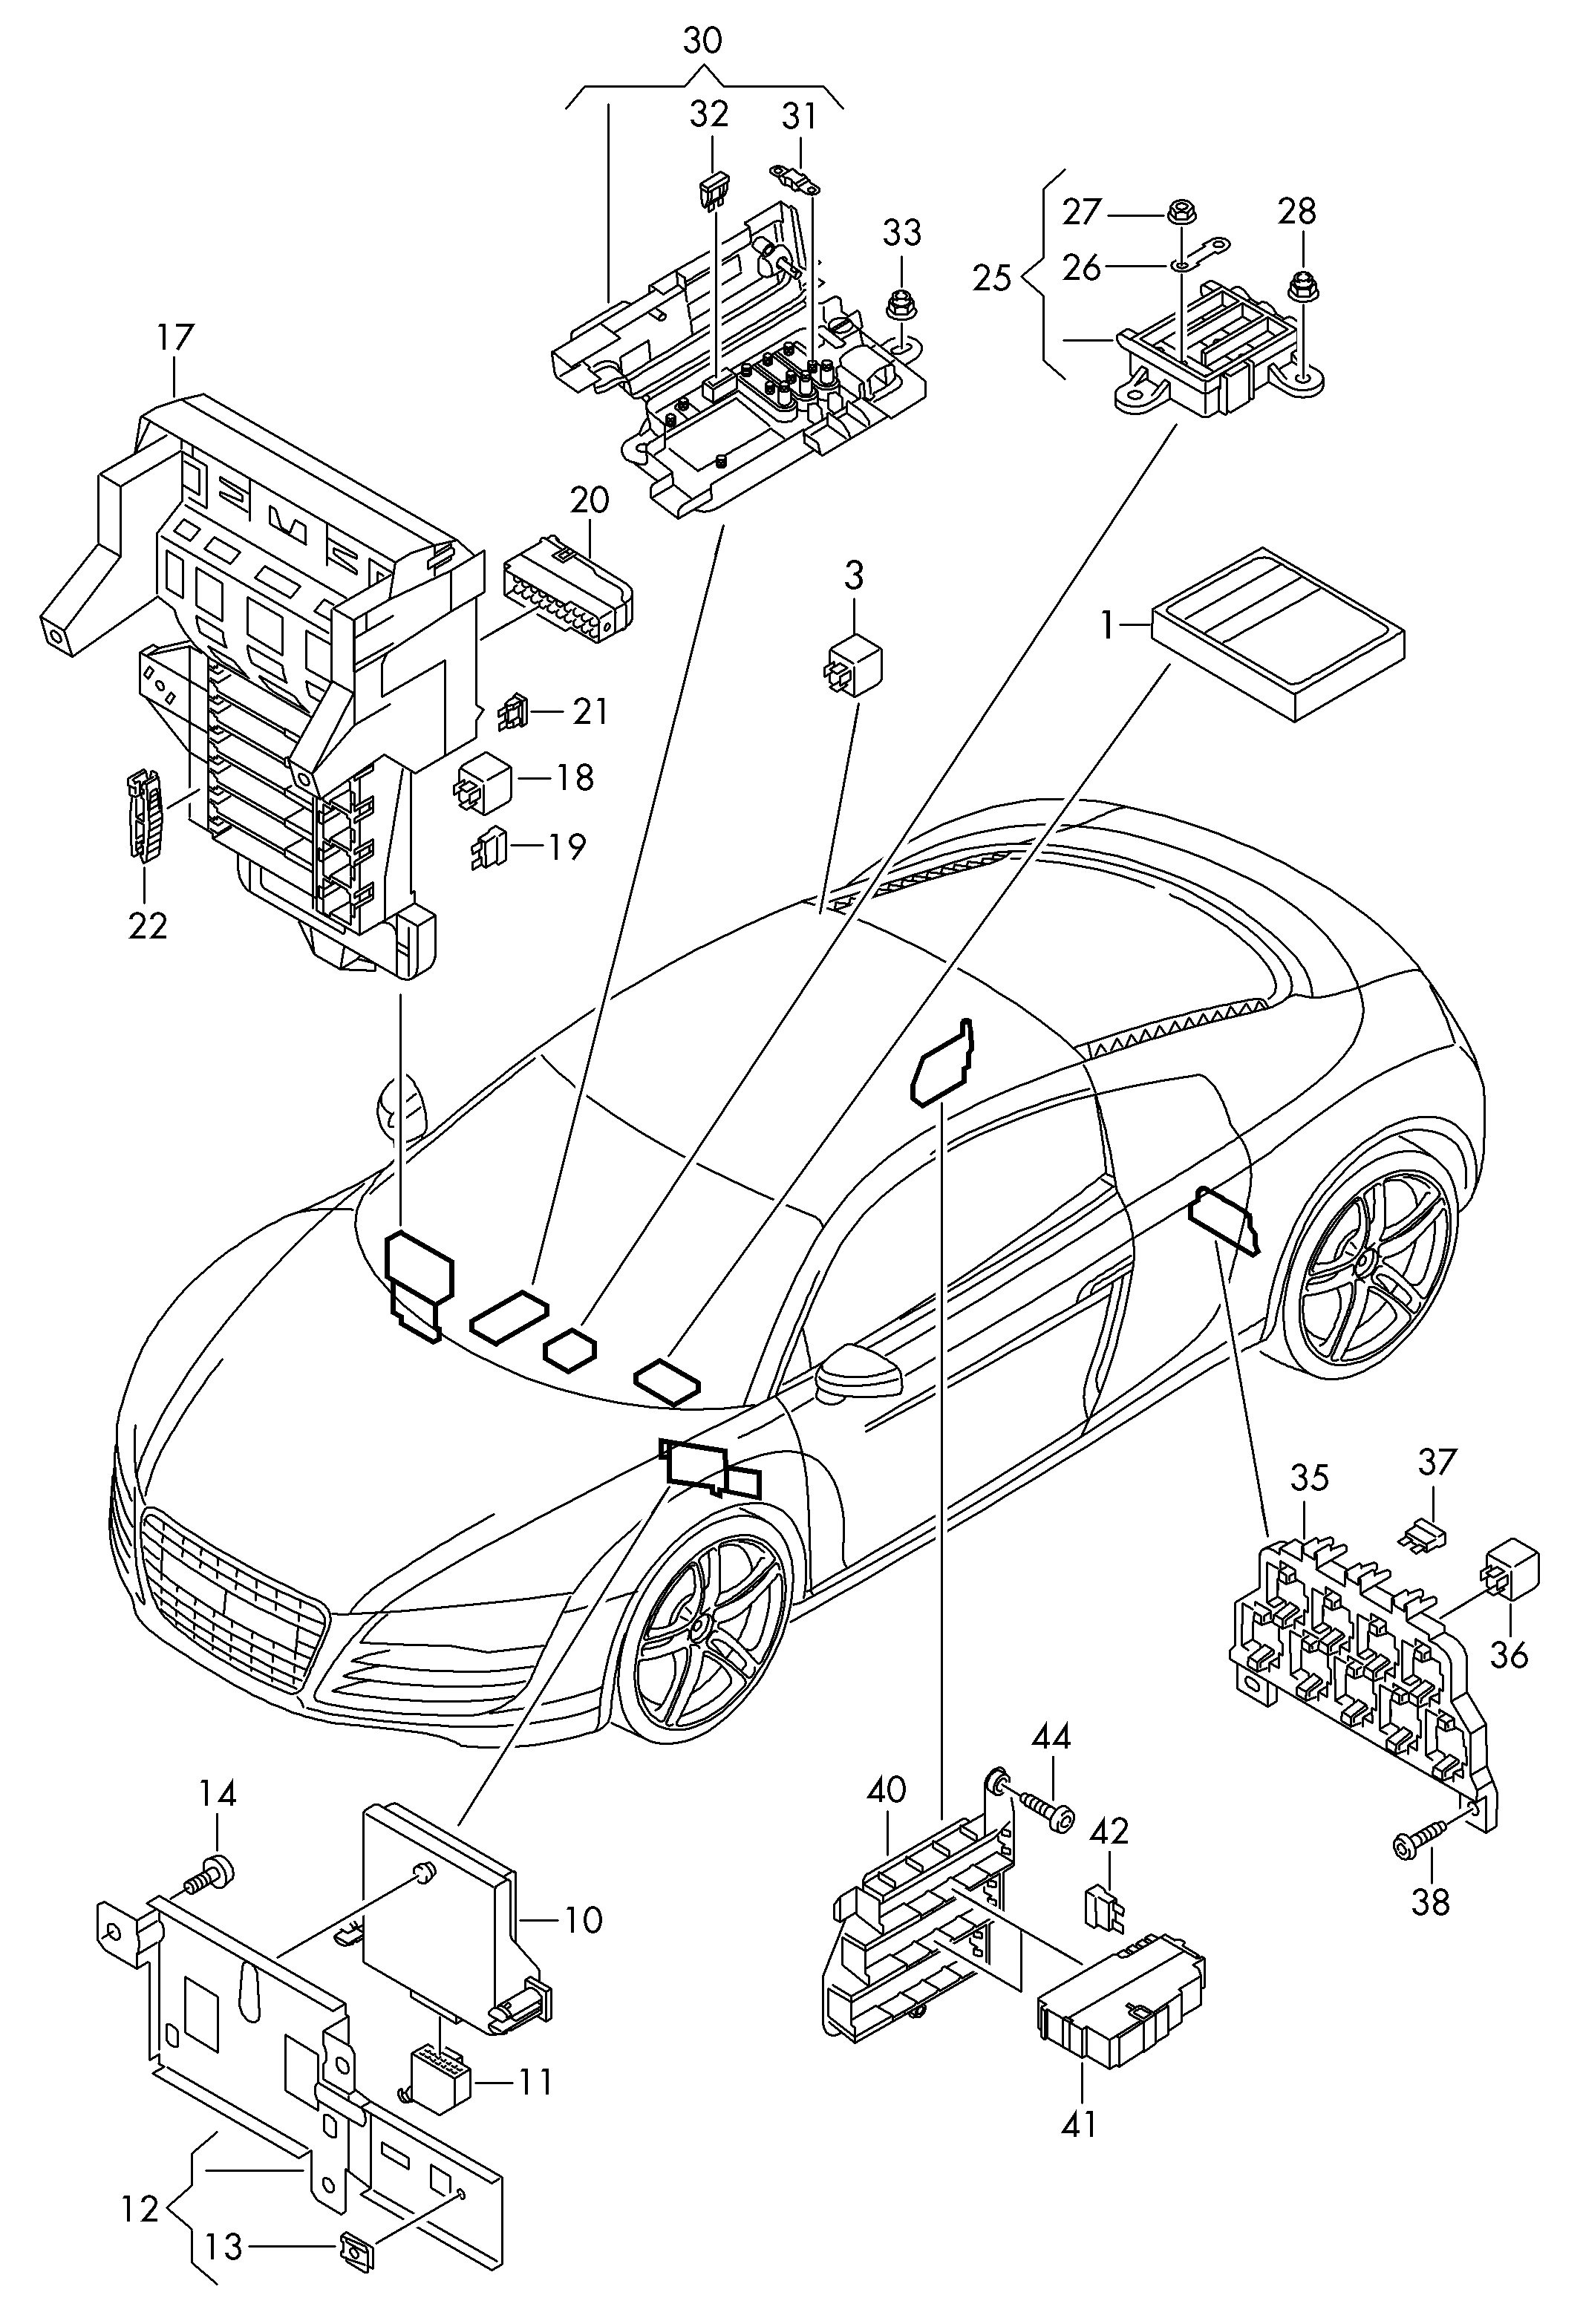 中央配电设备,保险丝盒,
继电器基座和继电器 - Audi R8(R8)  